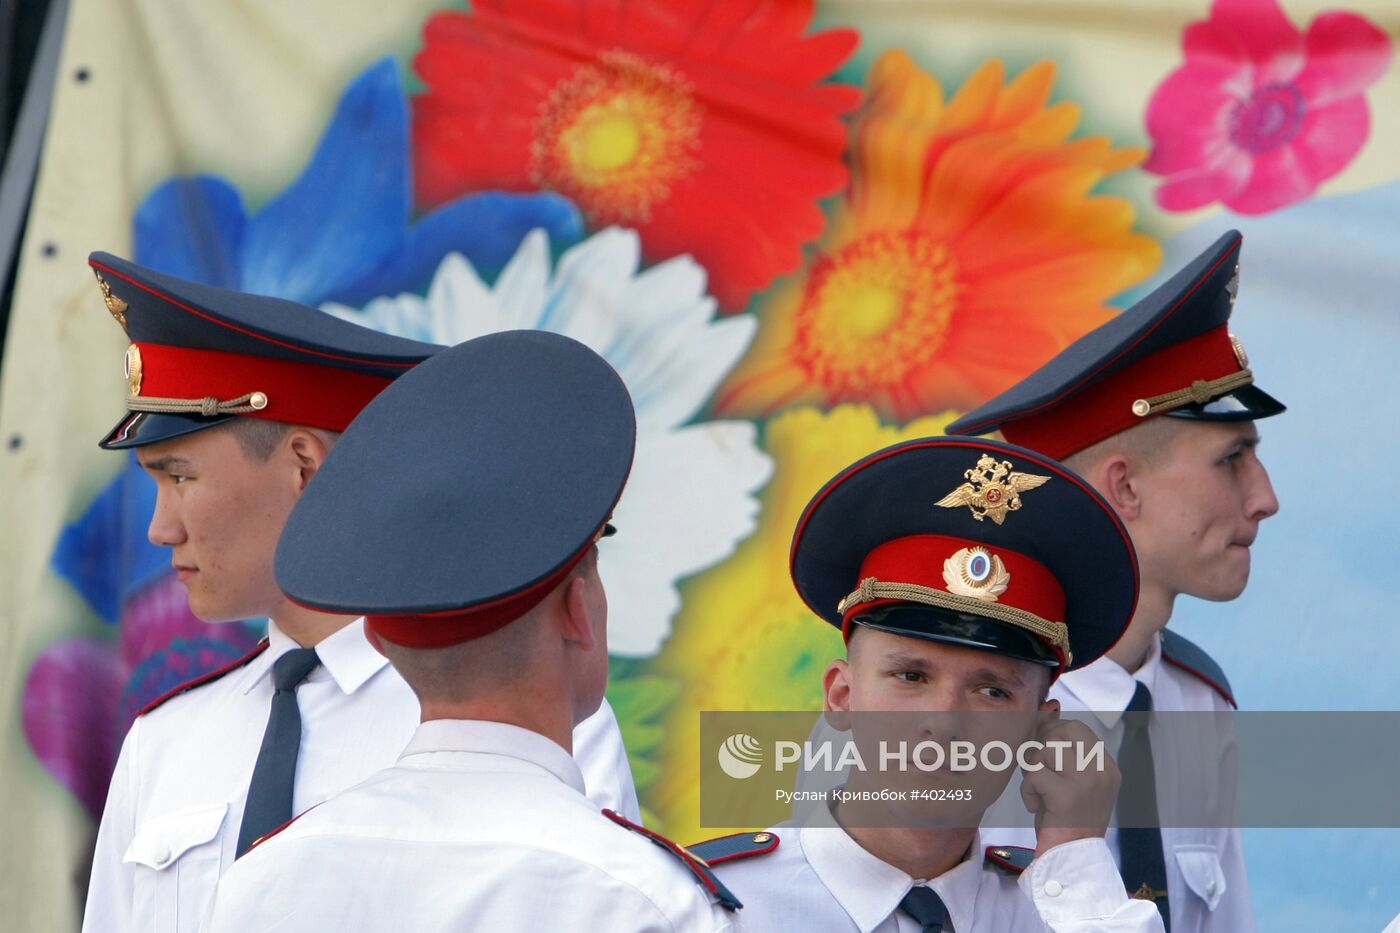 Празднование Дня России в Москве